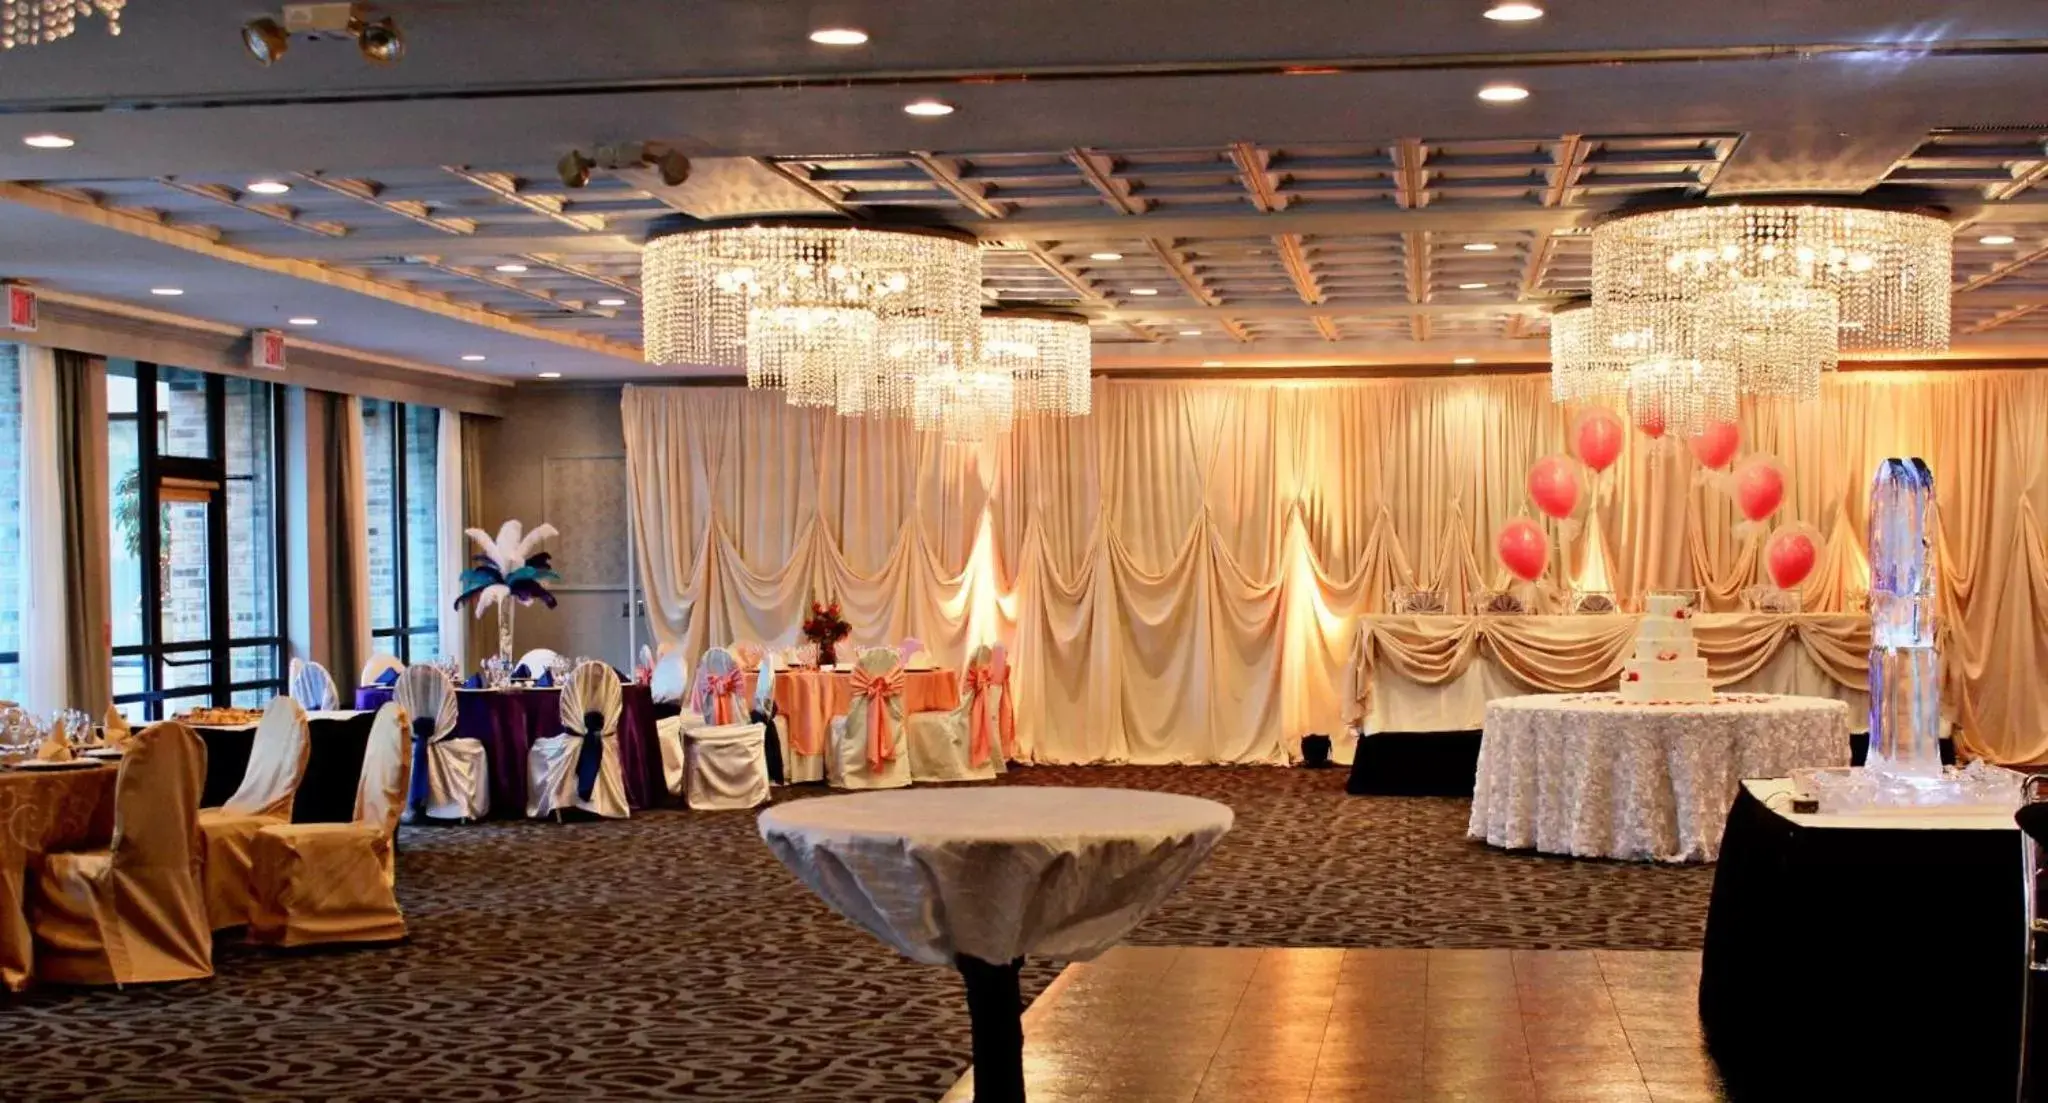 Banquet/Function facilities, Banquet Facilities in Wyndham Garden Schaumburg Chicago Northwest